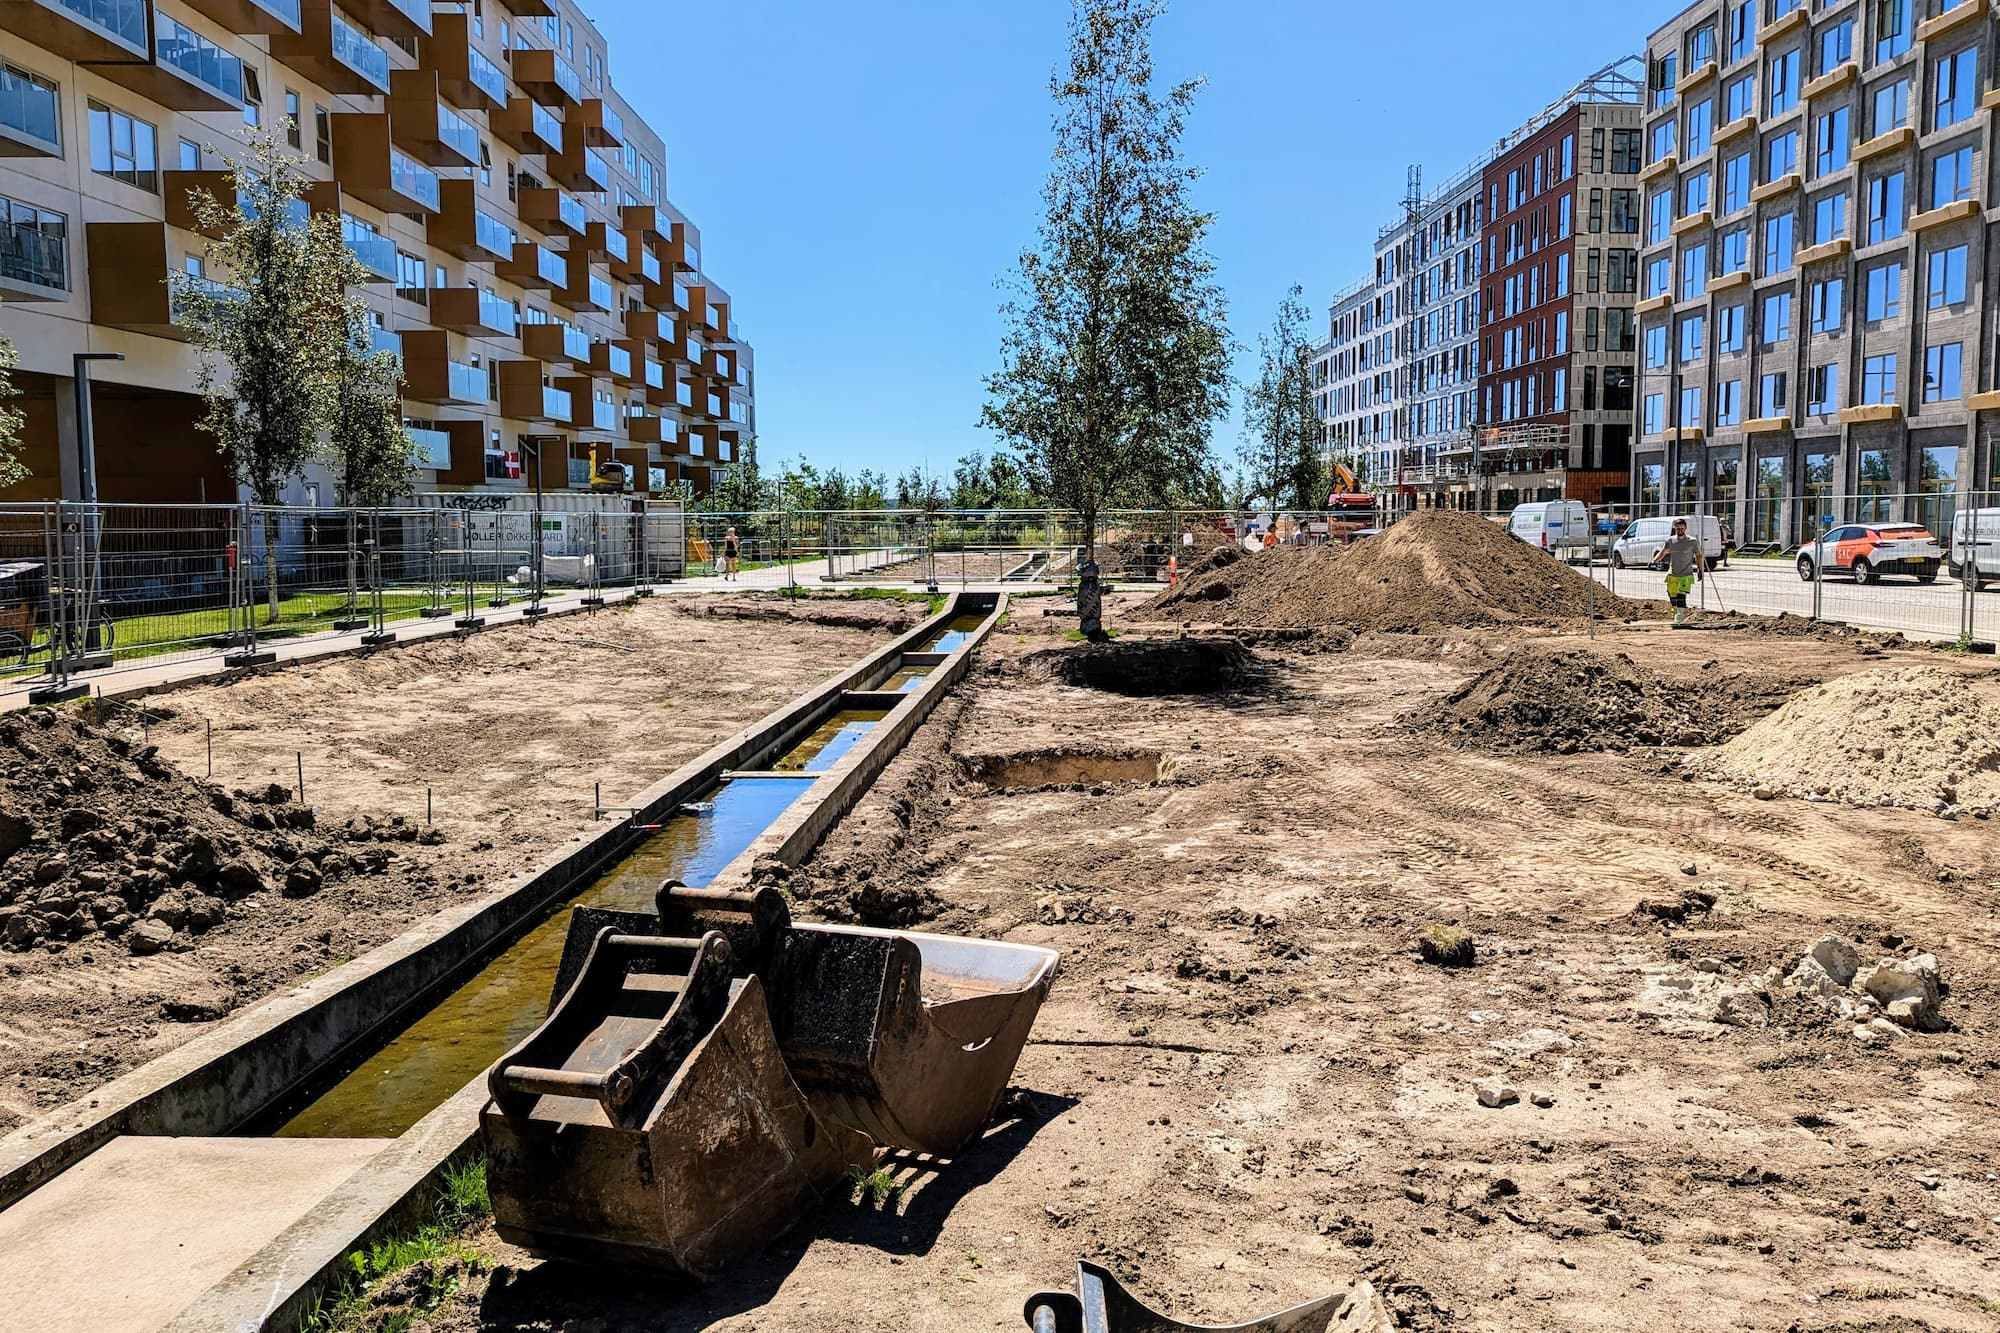 Arbejdet med næste etape af grundejerforeningens helhedsplan for Ørestad Syd er i gang. Etapen forvandler græsstykket ud for Else Alfelts Vej 89-95 til en park, og der er en masse at se frem til.